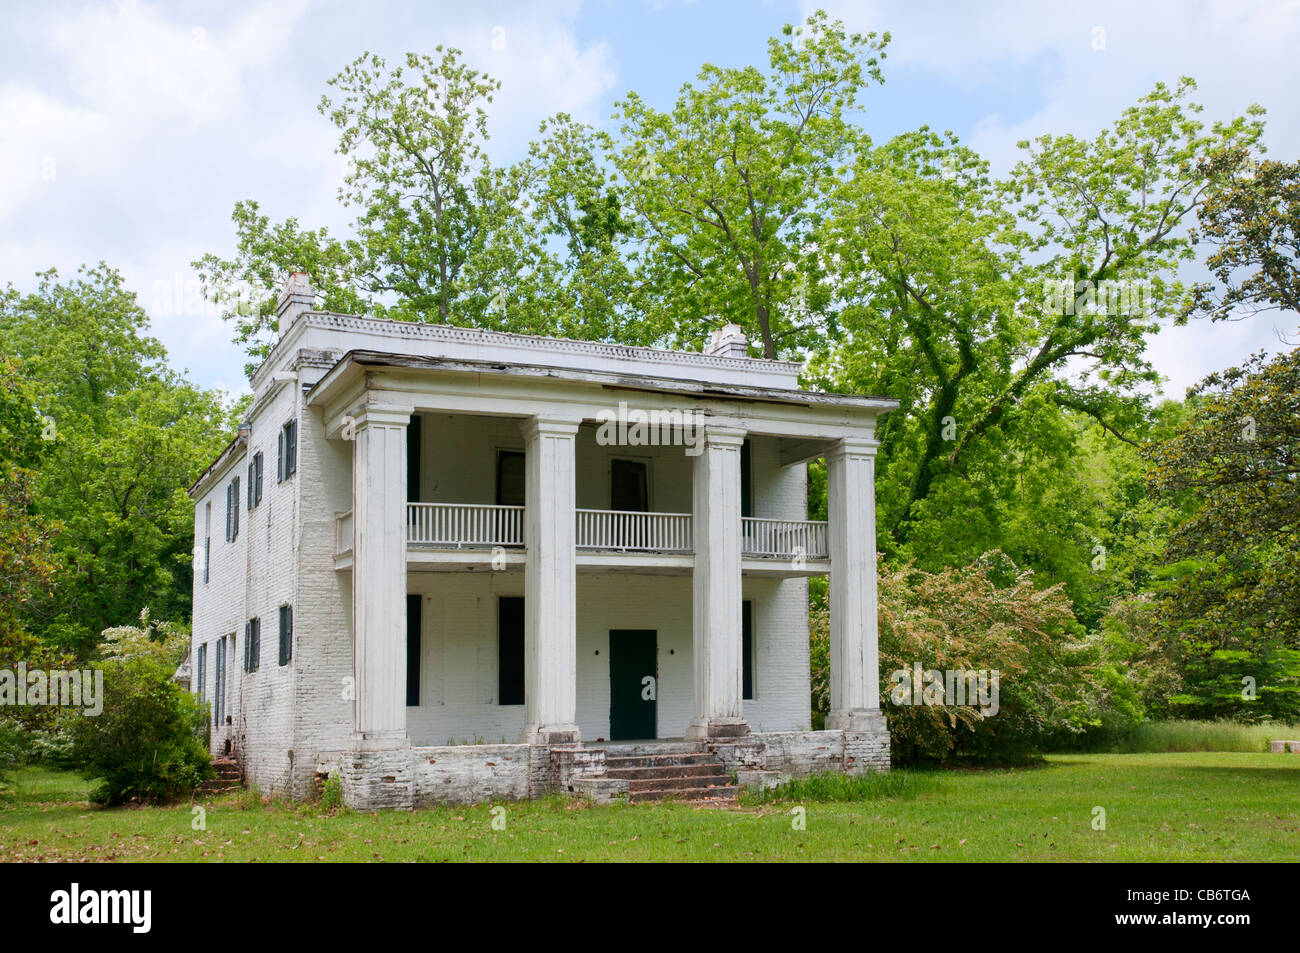 Hauptstadt des Bundesstaates Alabama, alte Ala, 1820-1826, wurde eine Geisterstadt kurz nach dem Bürgerkrieg, Struktur von Kirk-View Fram Stockfoto